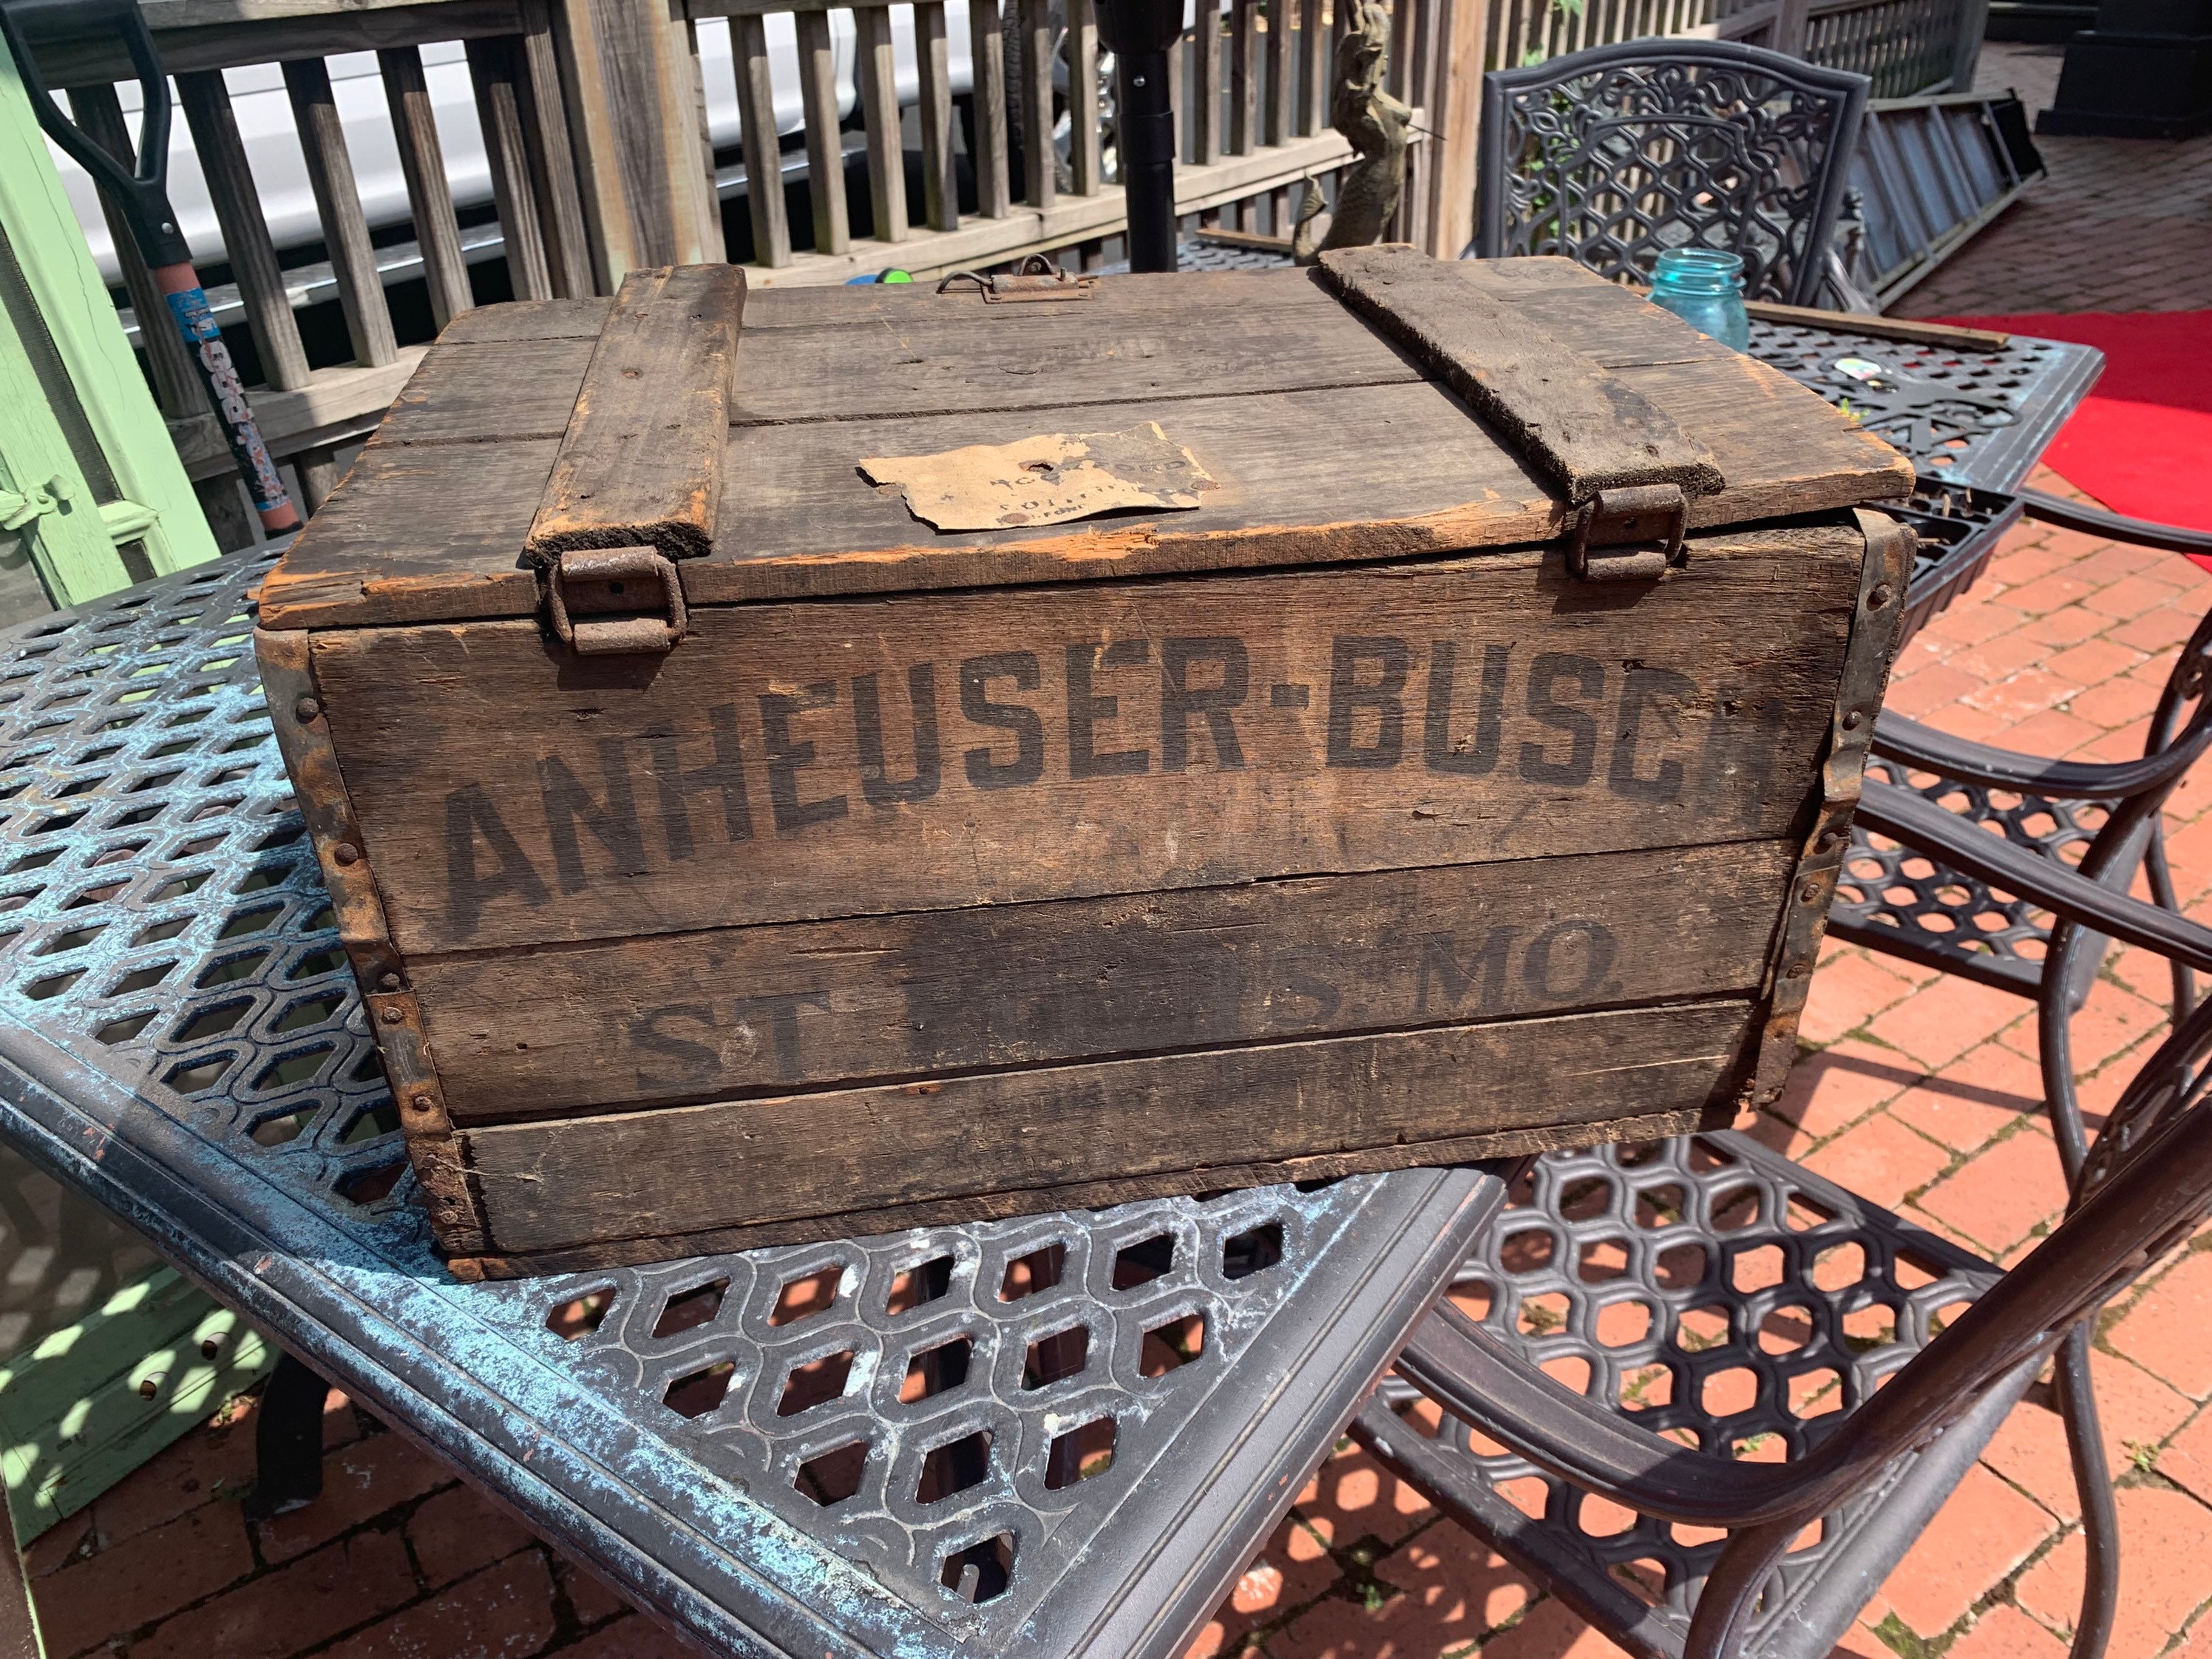 Anheuser-Busch Centennial Beer Crate